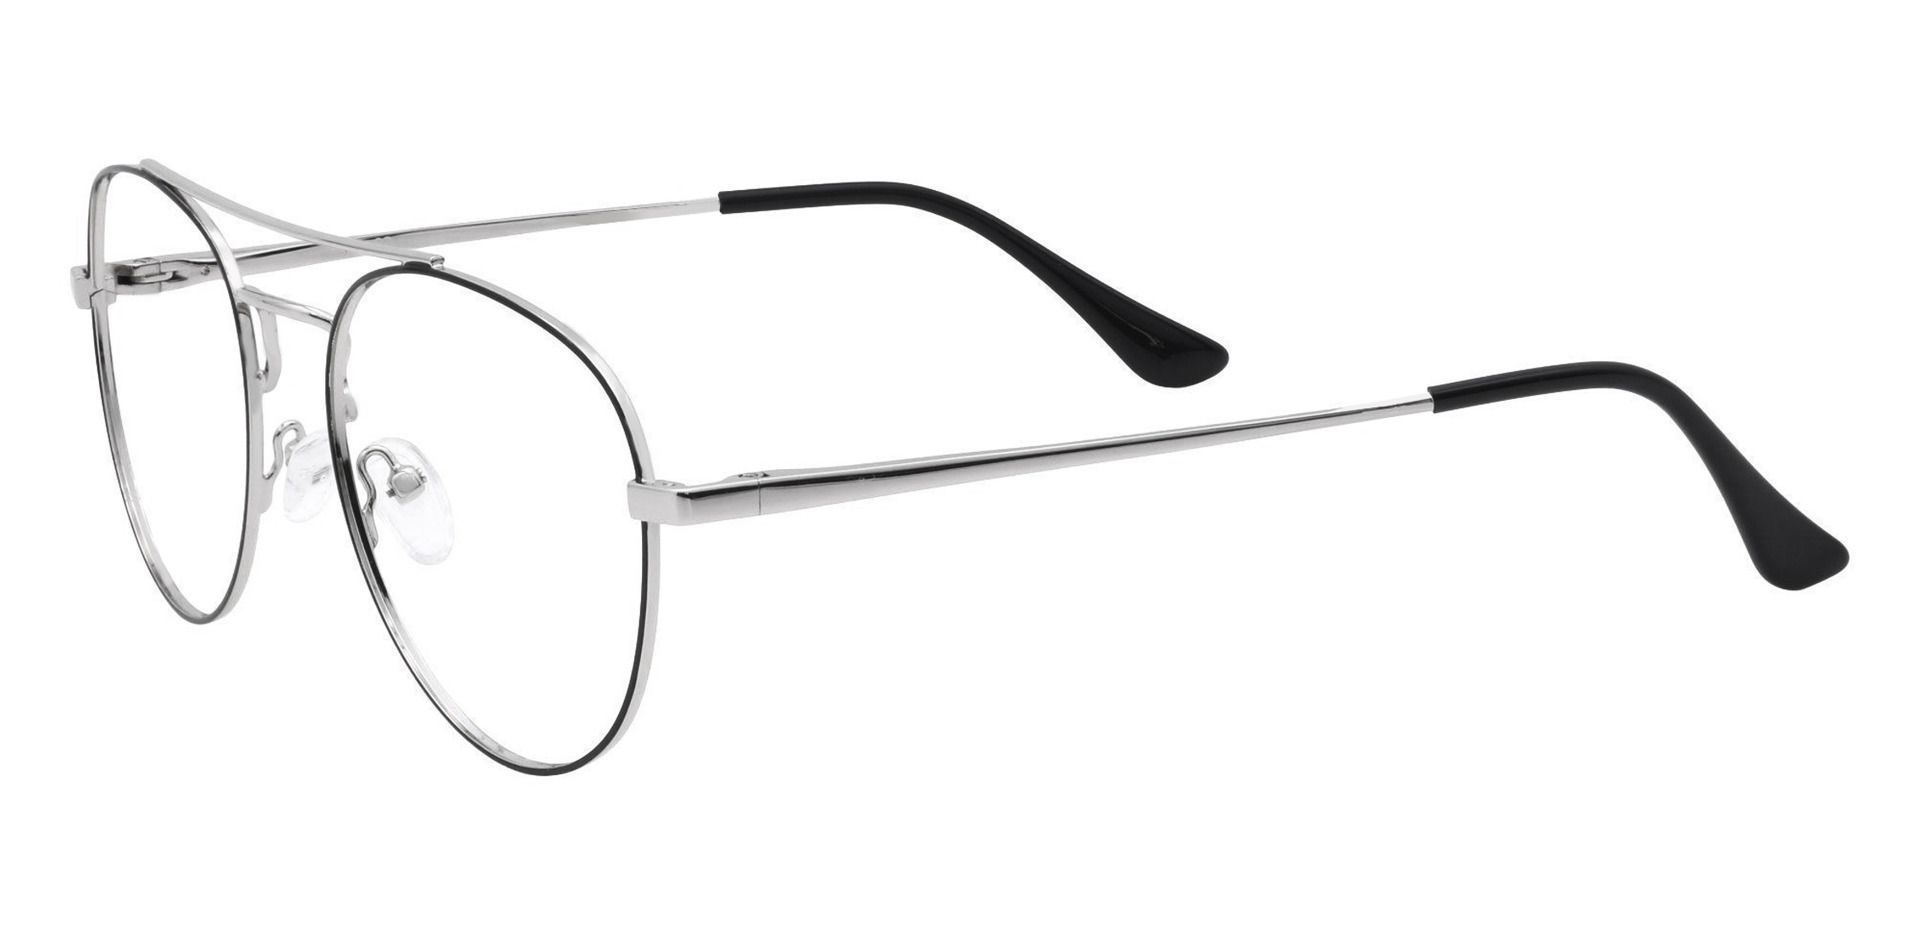 Trapp Aviator Prescription Glasses - Gray